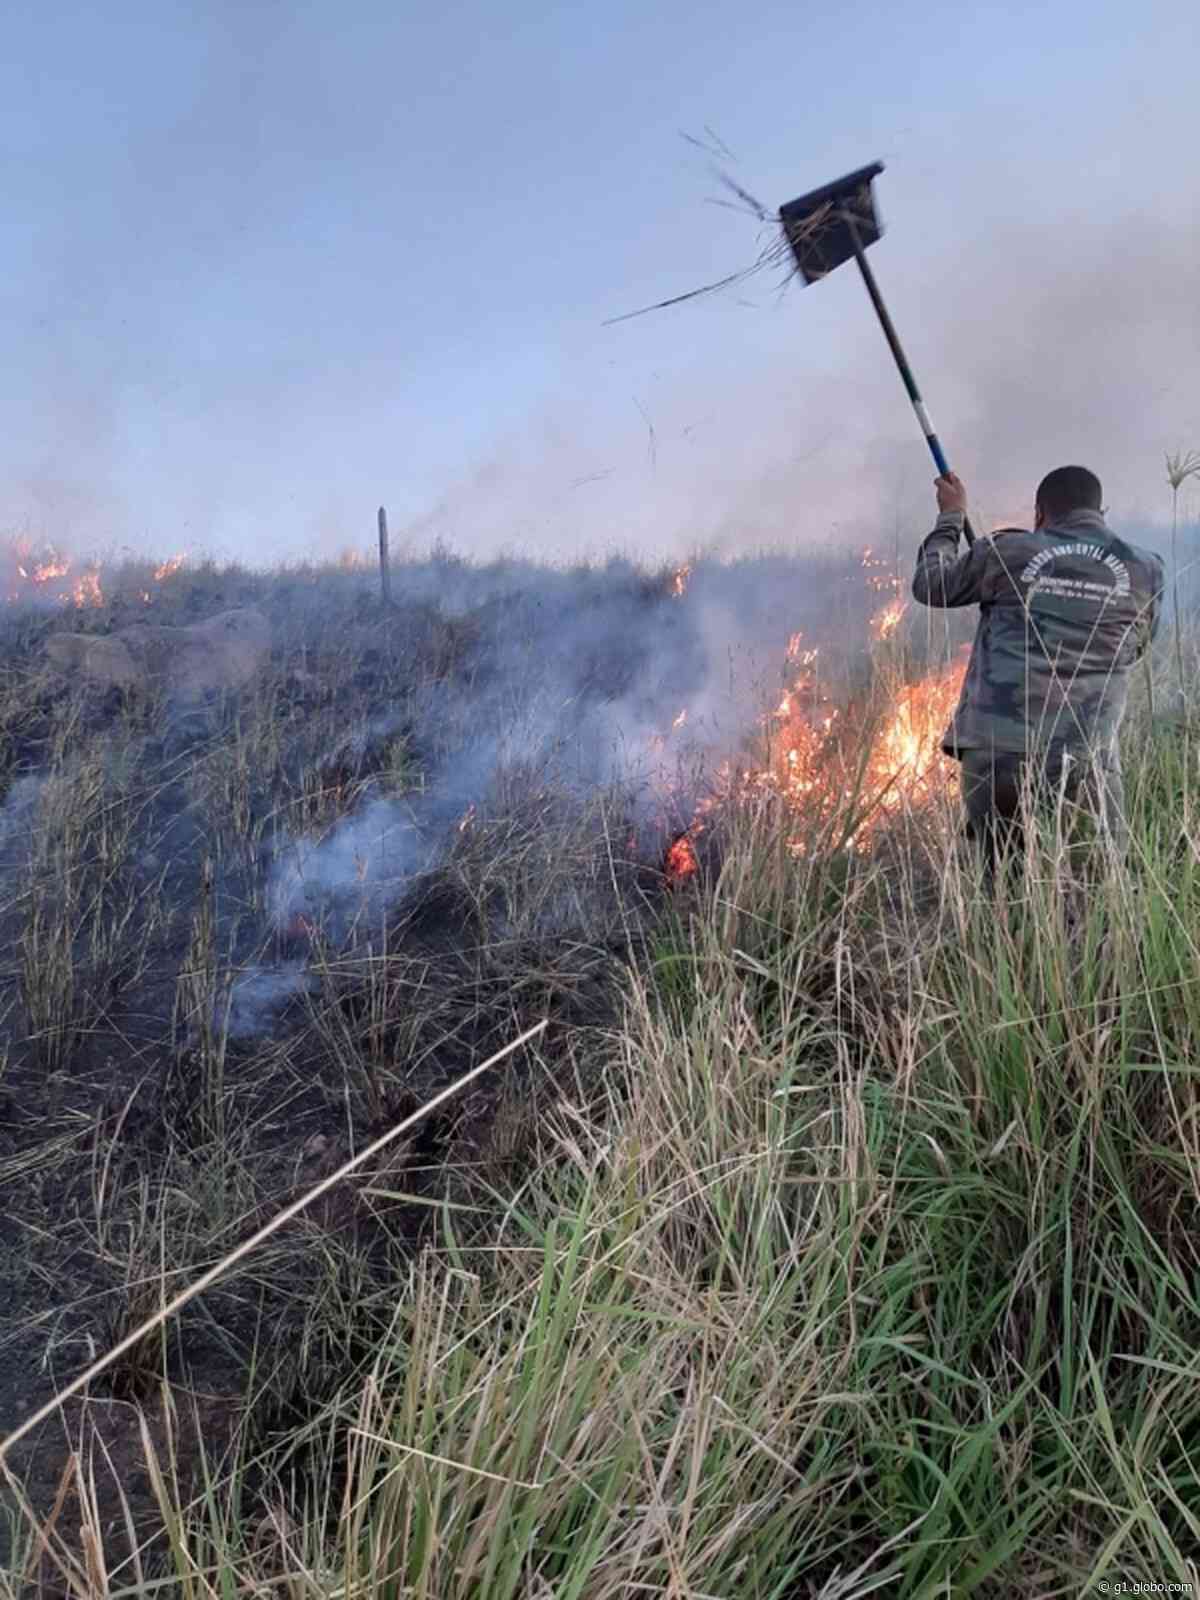 Guarda Ambiental combate incêndio em área de vegetação em Arraial do Cabo, no RJ - G1